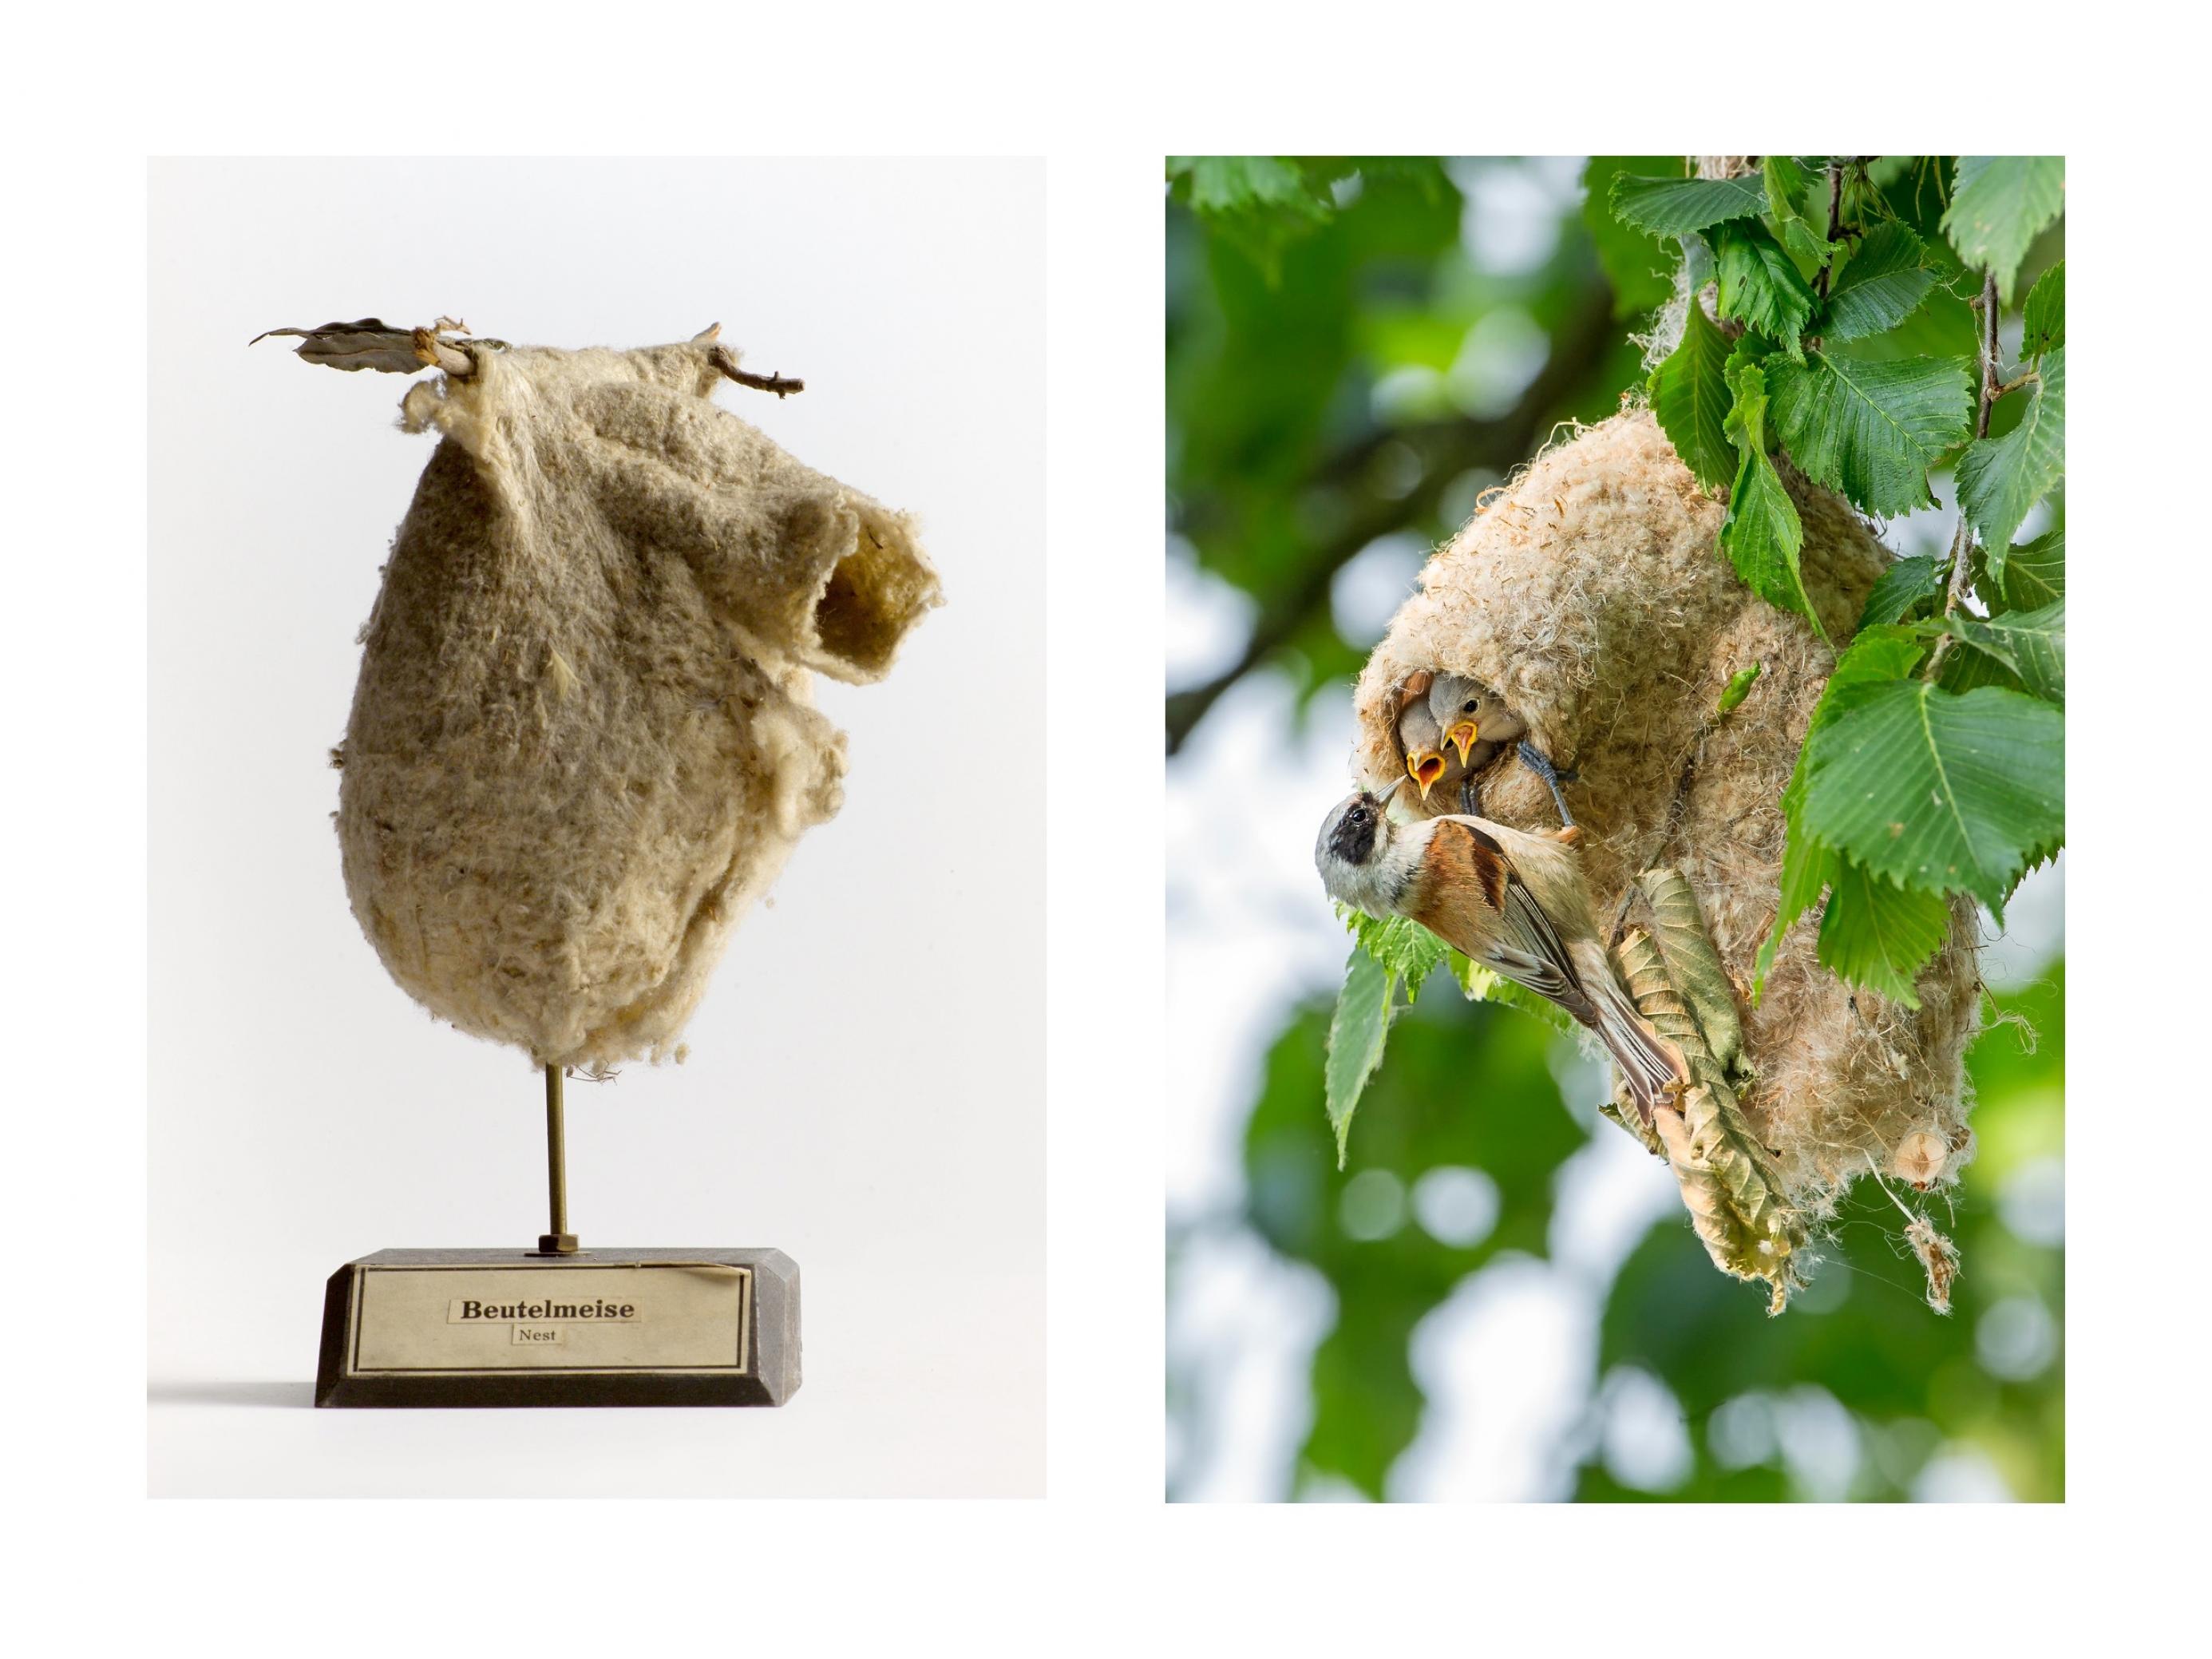 Das Nest der Beutelmeise sieht aus wie ein gemütlicher Wollsack. Auf dem linken Bild ist das Nest als Museumsexponat gezeigt, rechts an einem Weidenbaum mit Jungvögeln und einem erwachsenen Vogel, der sie füttert.